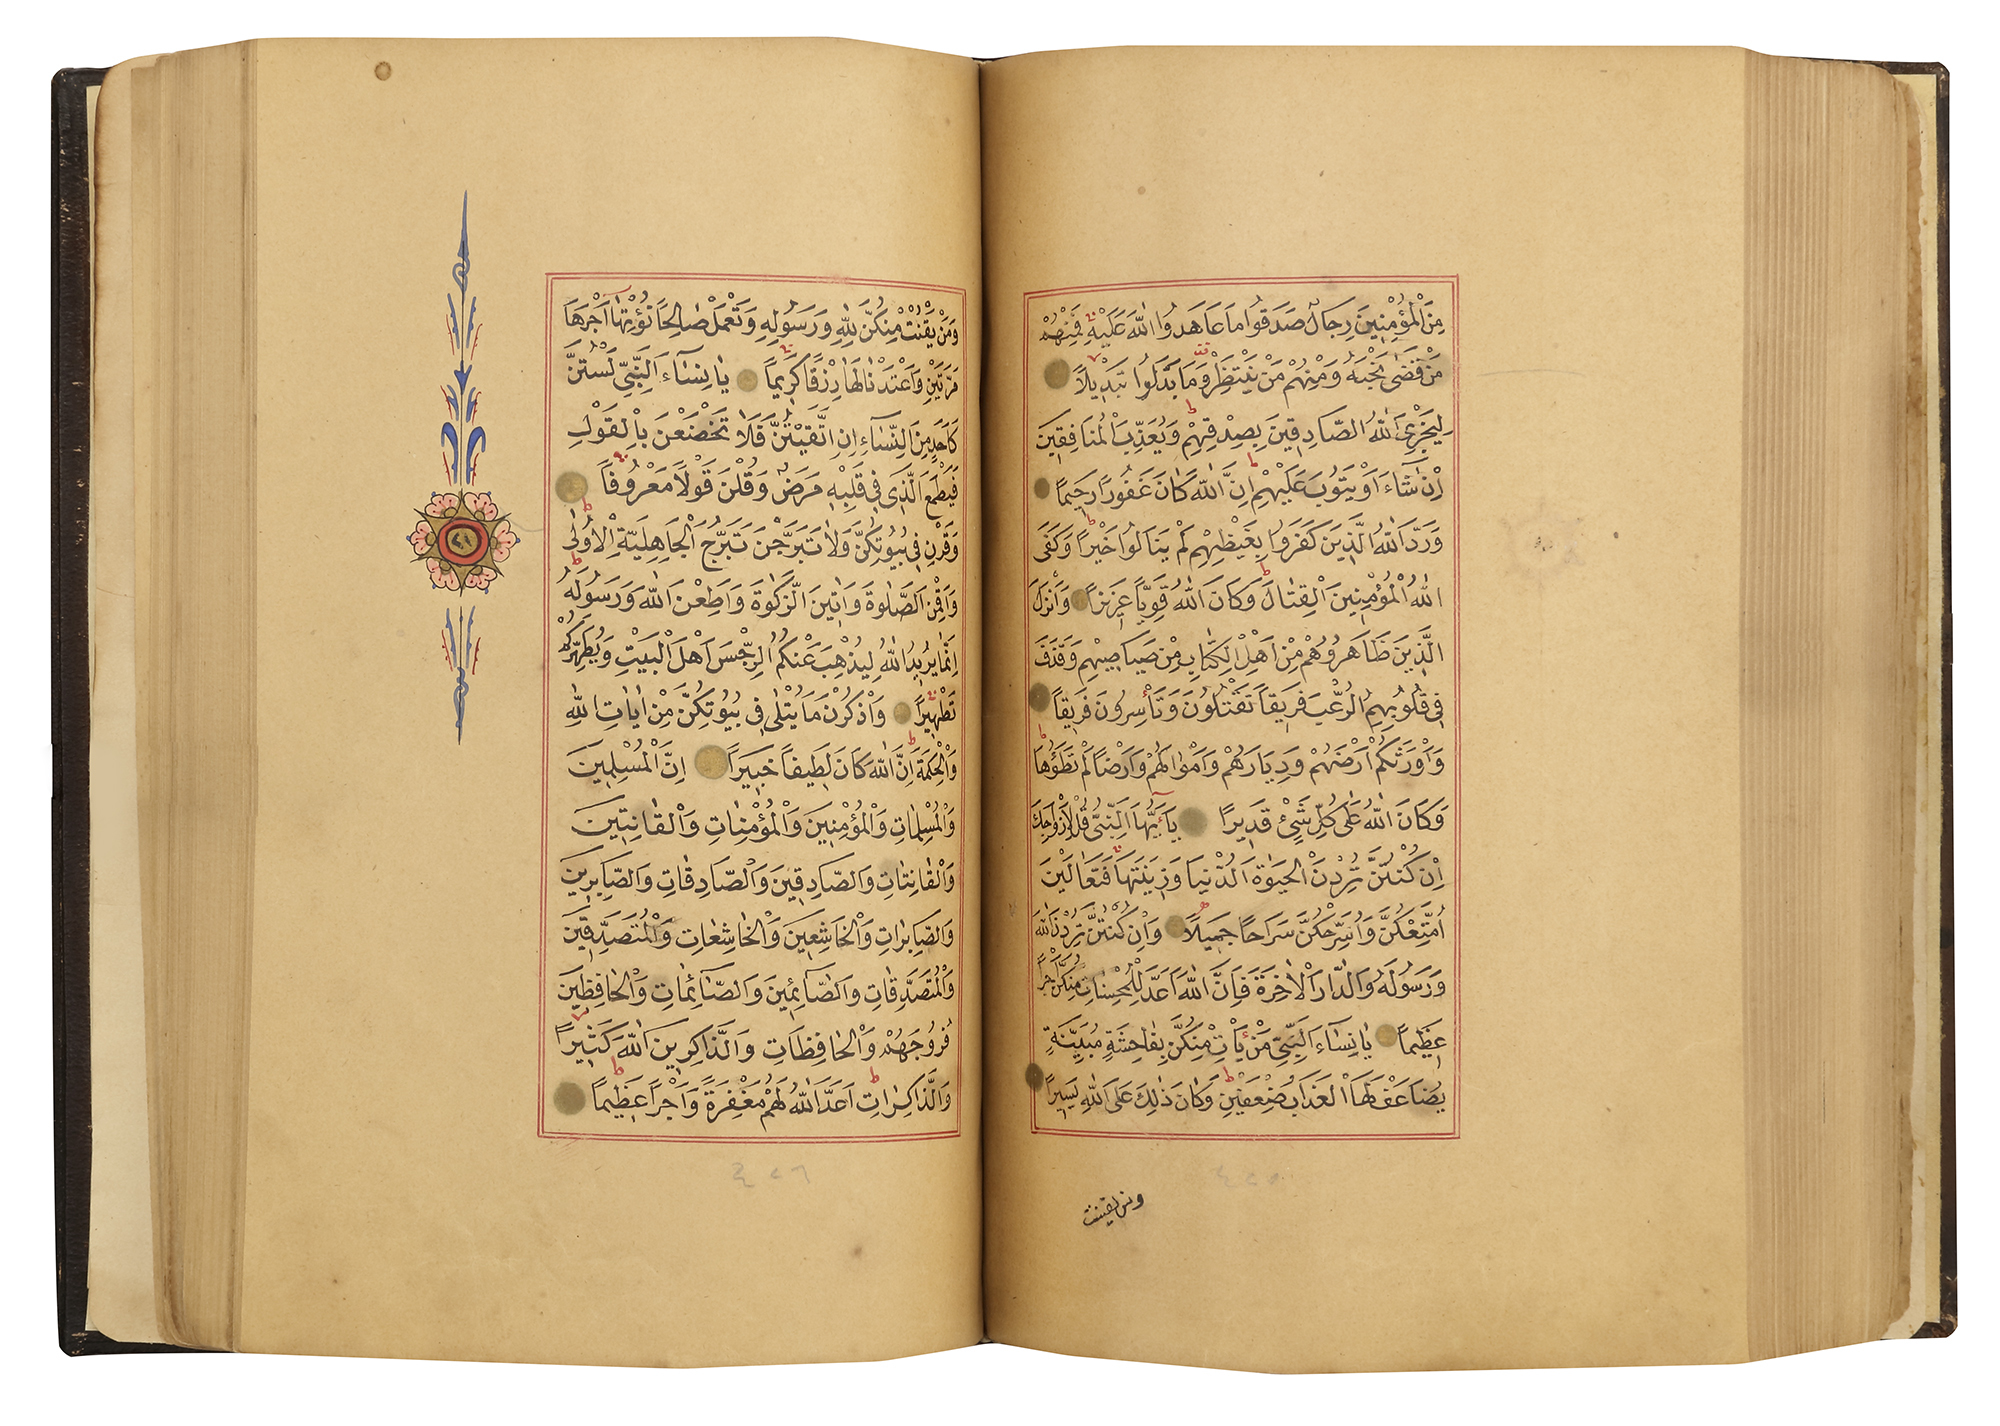 A FINE OTTOMAN QURAN, TURKEY, EDIRNE, WRITTEN BY HUSSEIN AL-HUSNA IBN AHMED AL-ADRUNI, DATED 1287 AH - Image 6 of 8